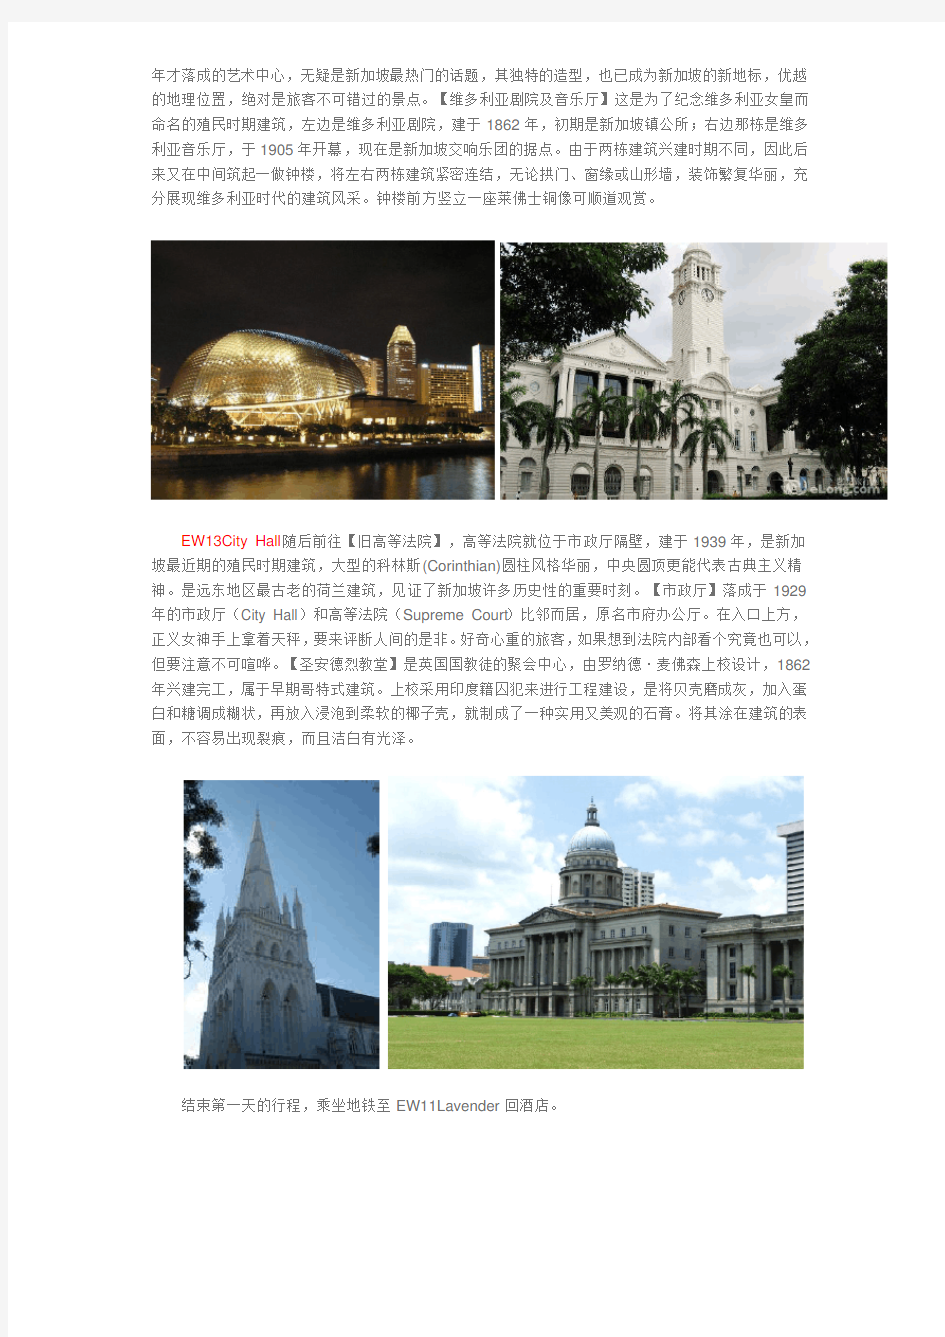 新加坡建筑考察之旅